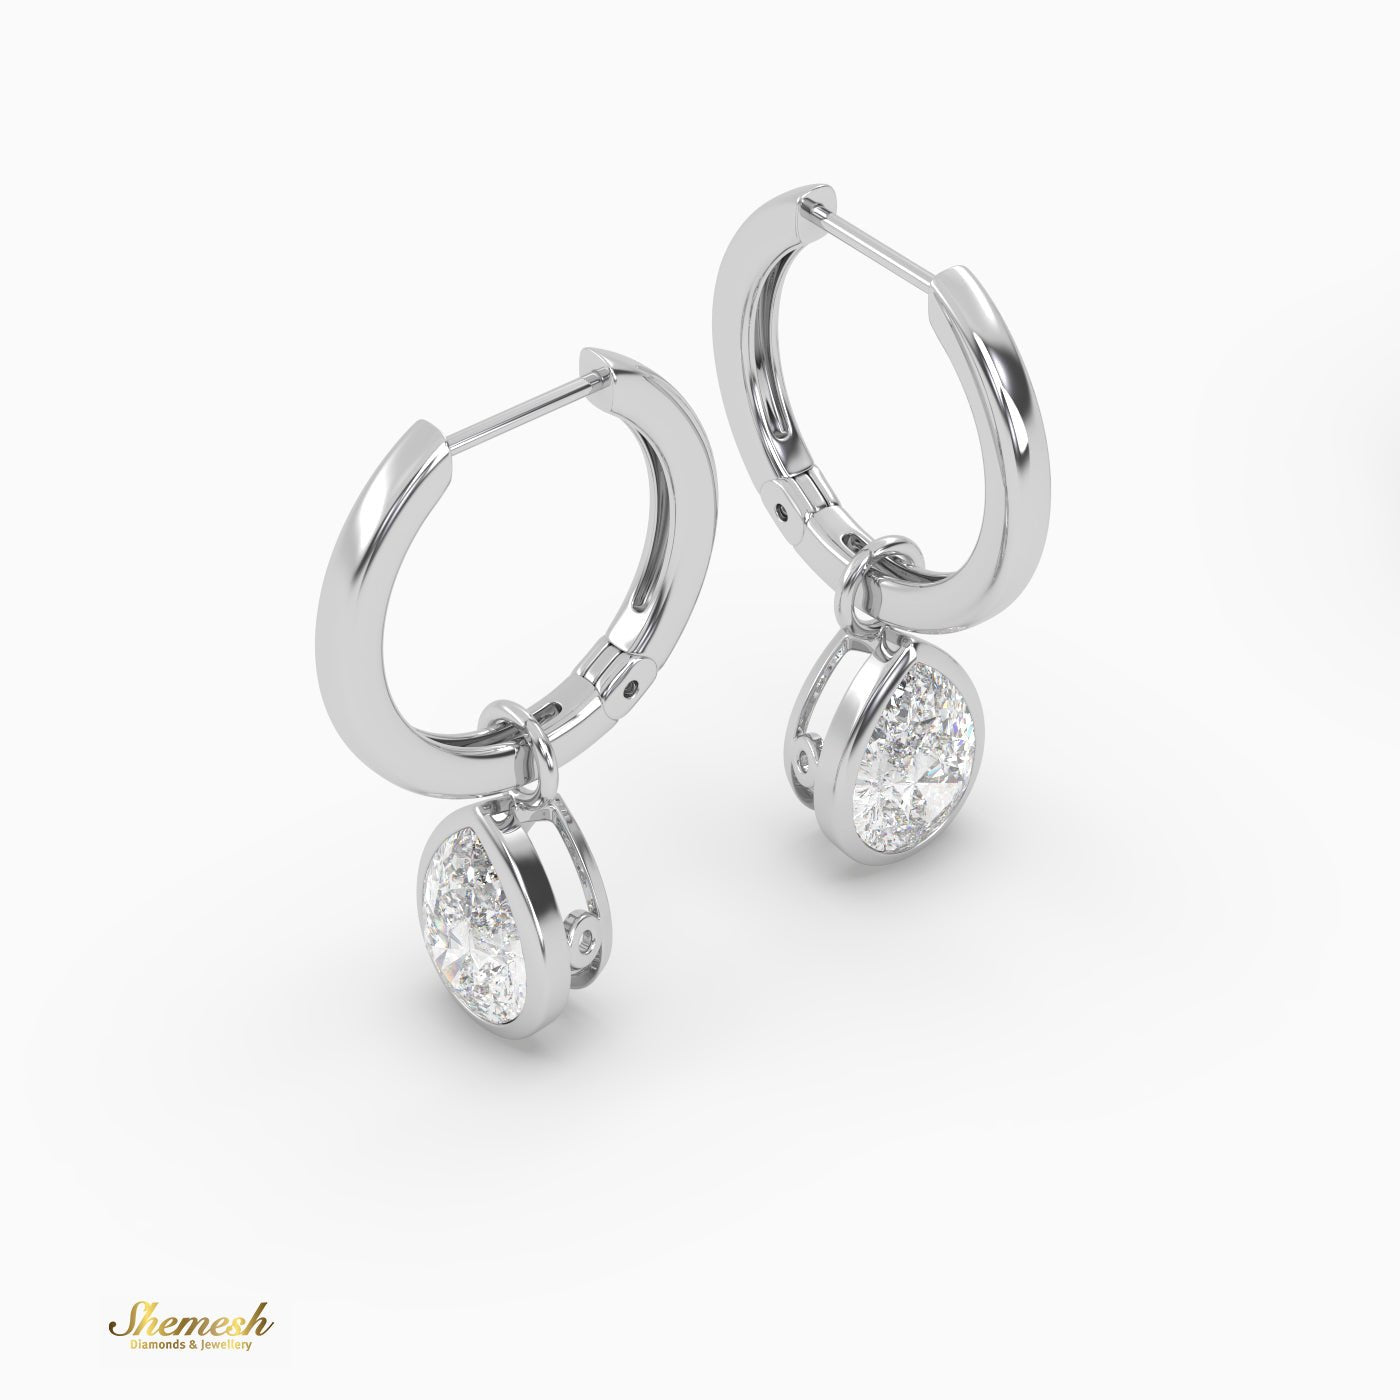 Pear Cut Drop Diamond Huggies Earrings - shemesh_diamonds